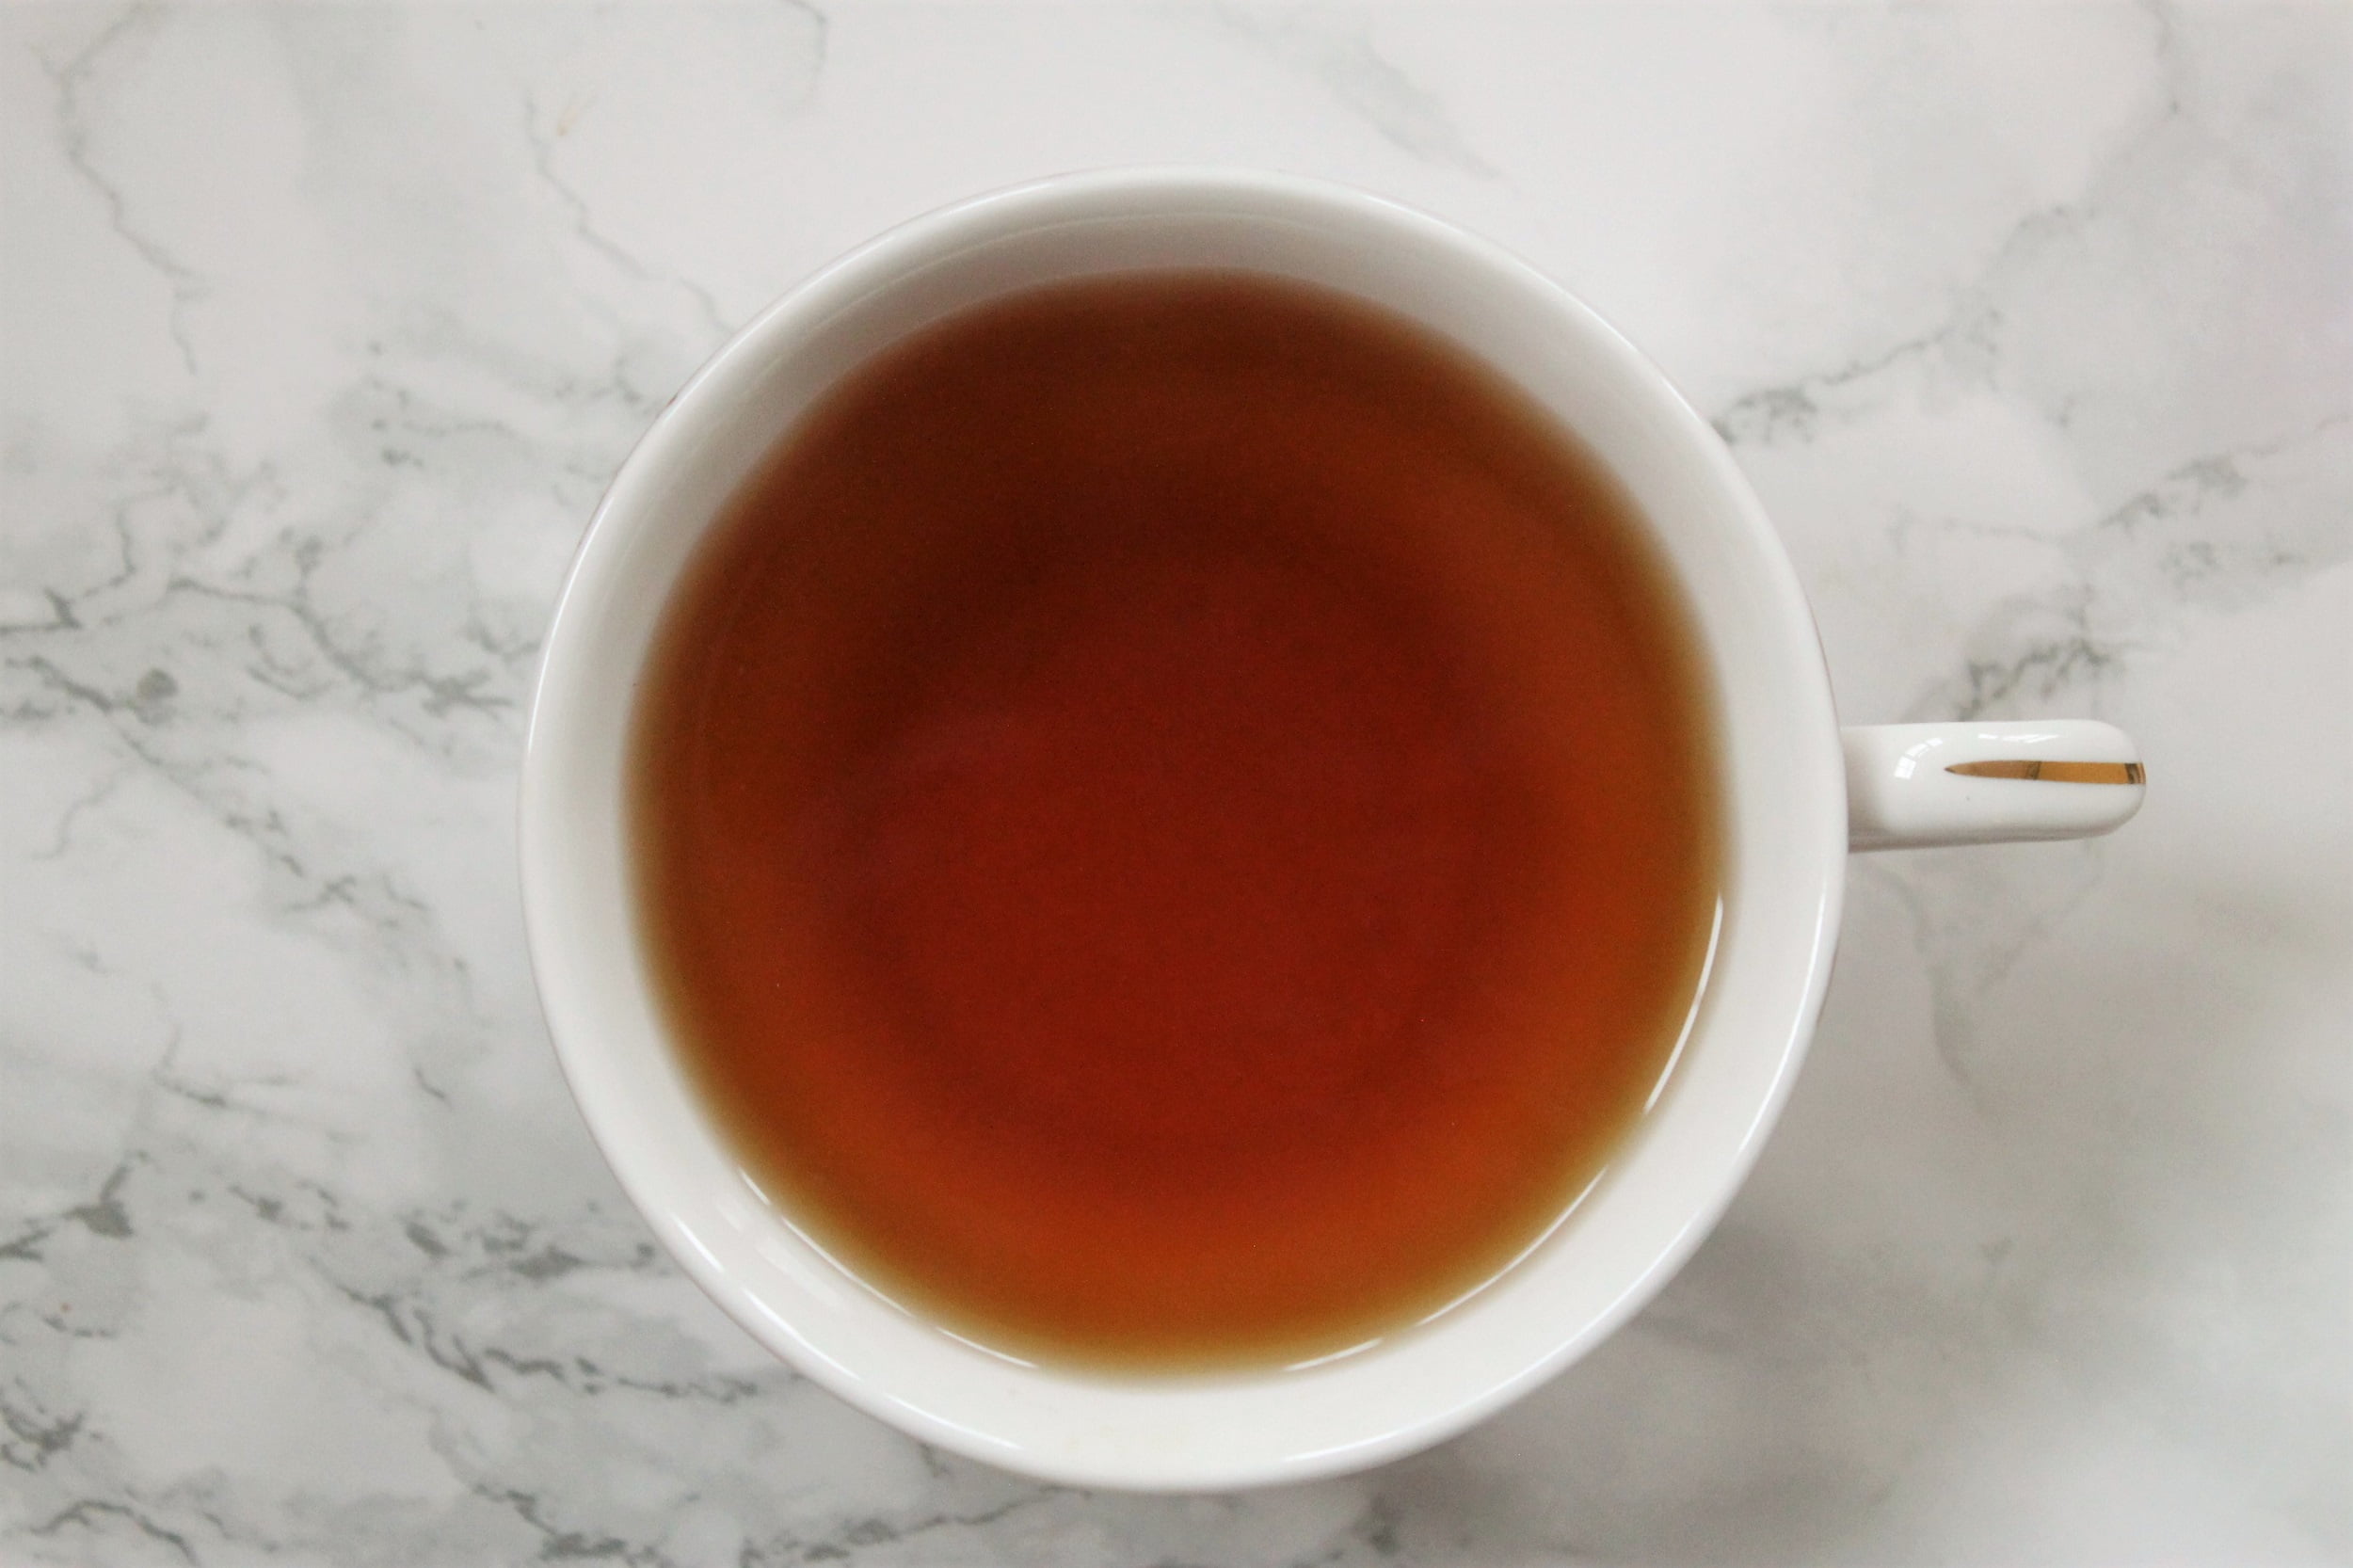 brown cinnamon tea in white teacup